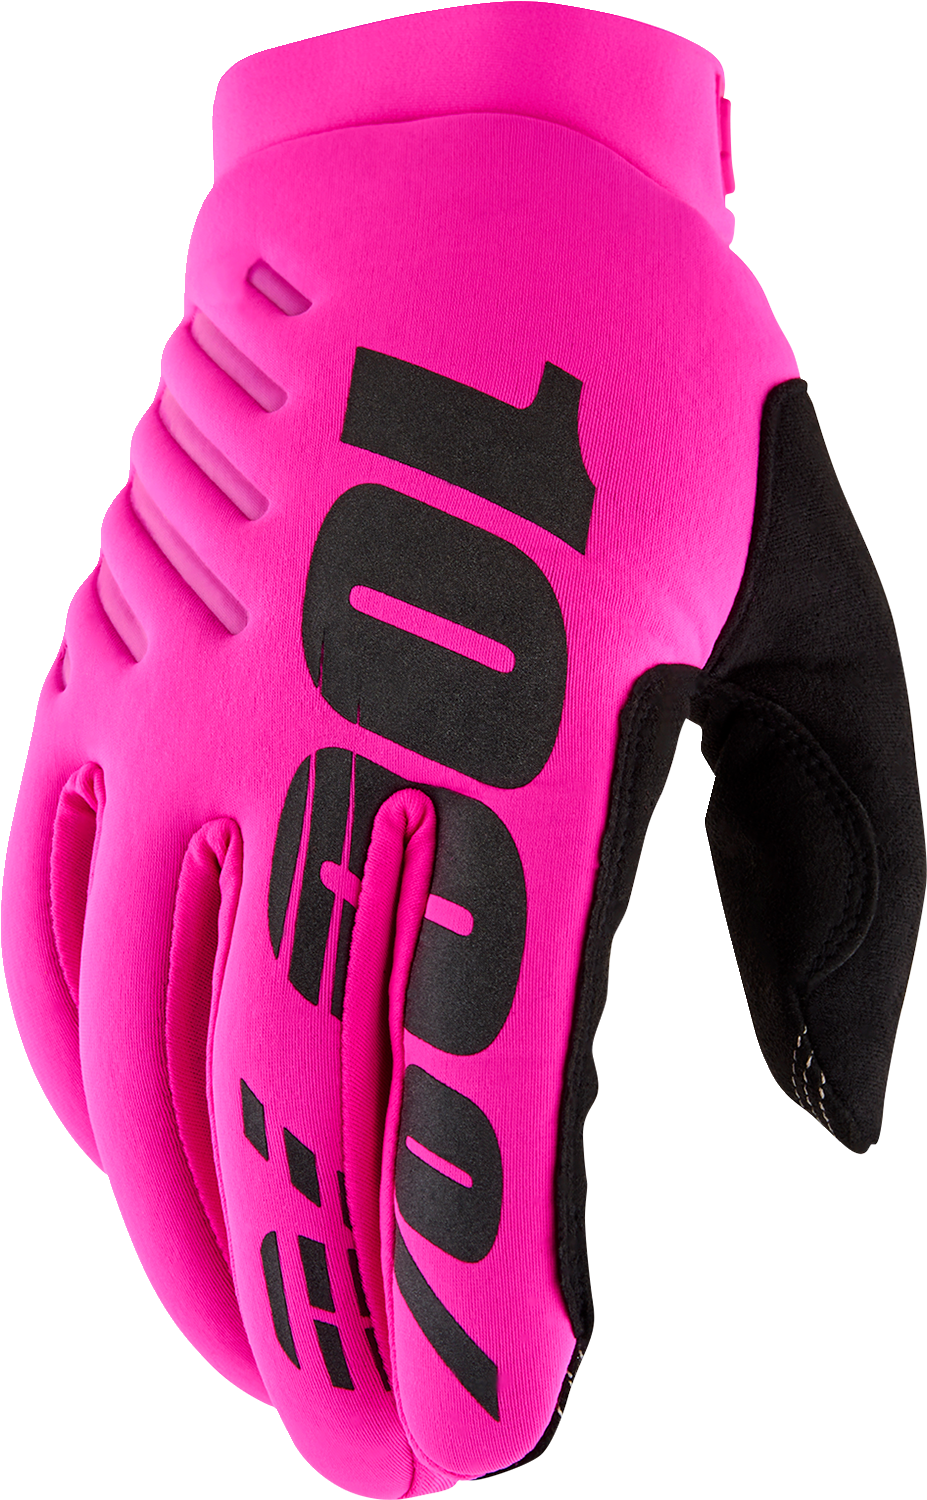 100% Women's Brisker Gloves - Neon Pink/Black - XL 10005-00009